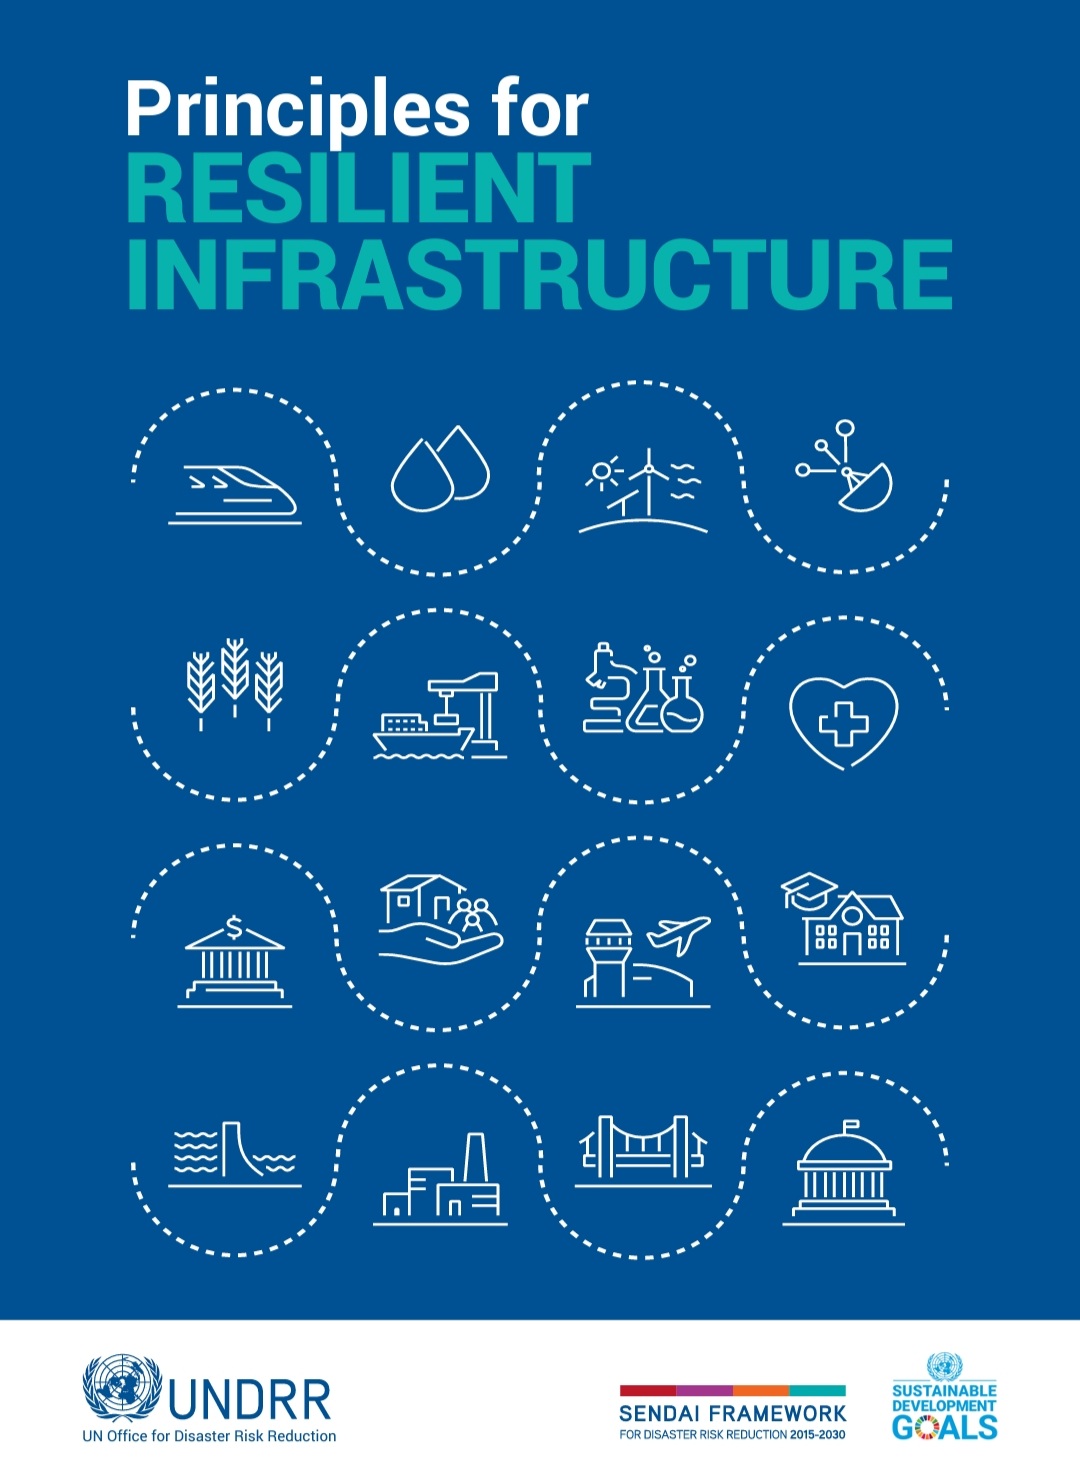 Globalne Konsultacje na temat Zasad Odpornej Infrastruktury